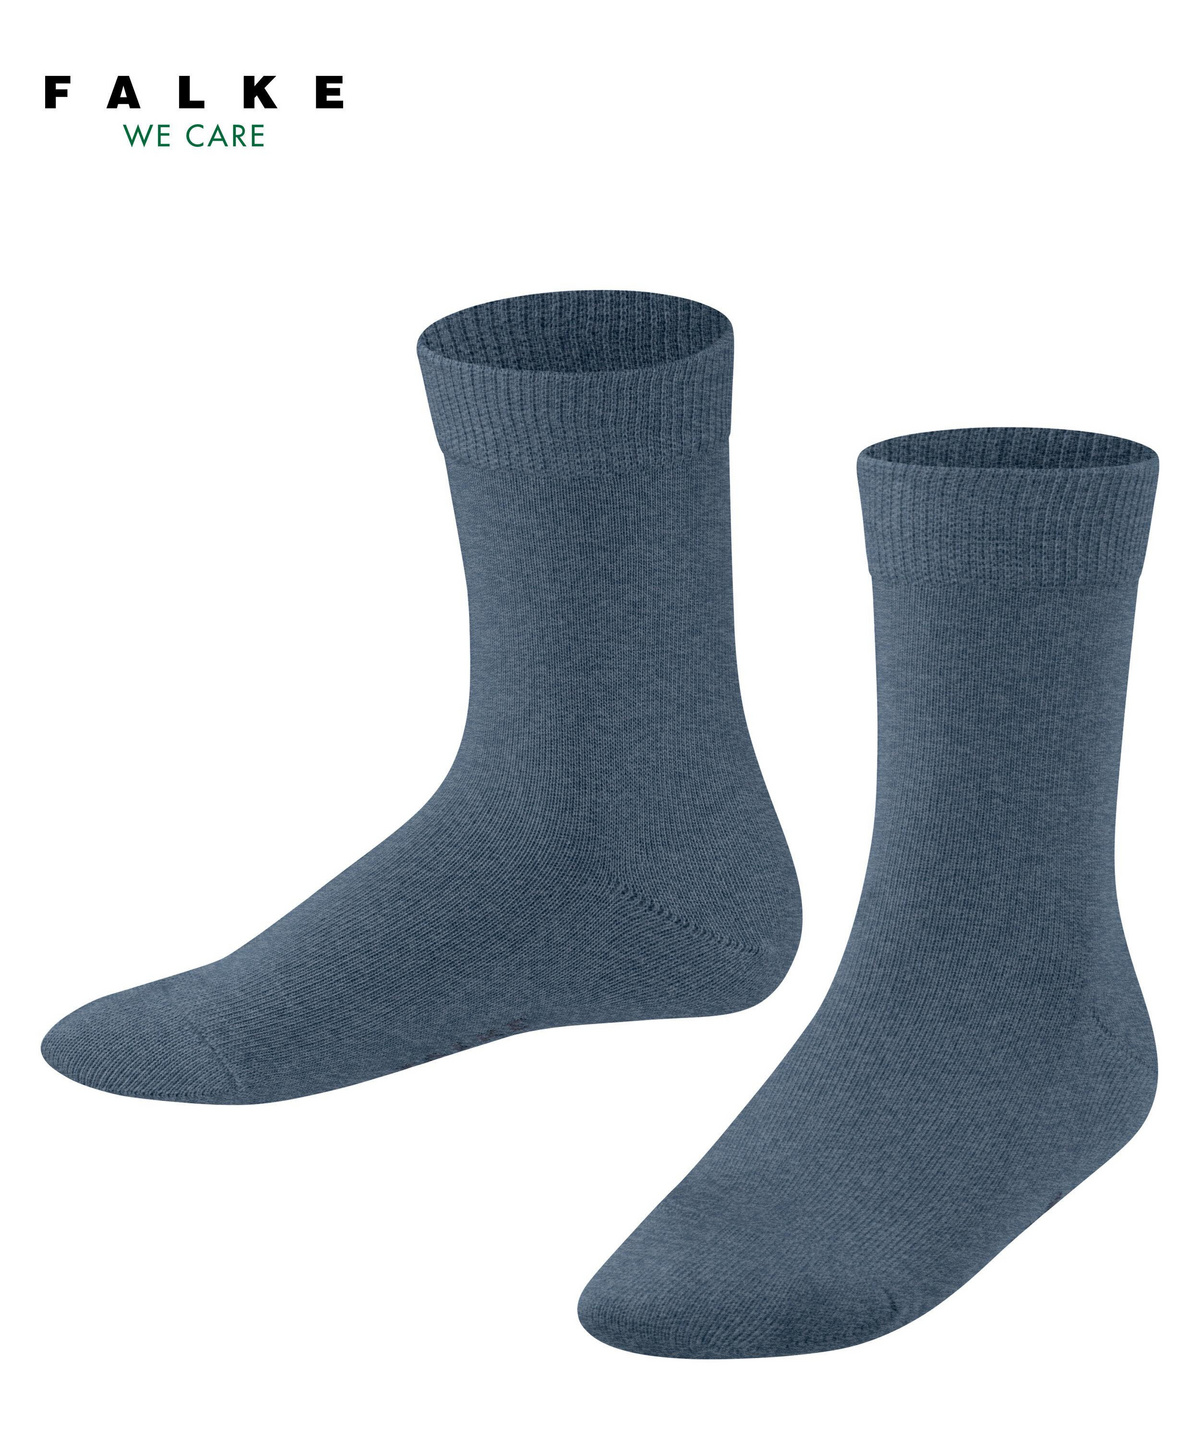 FALKE Socken Happy 2-Pack Baumwolle Kinder schwarz blau viele weitere Farben verstärkte Kindersocken ohne Muster atmungsaktiv dünn und einfarbig 2 Paar 